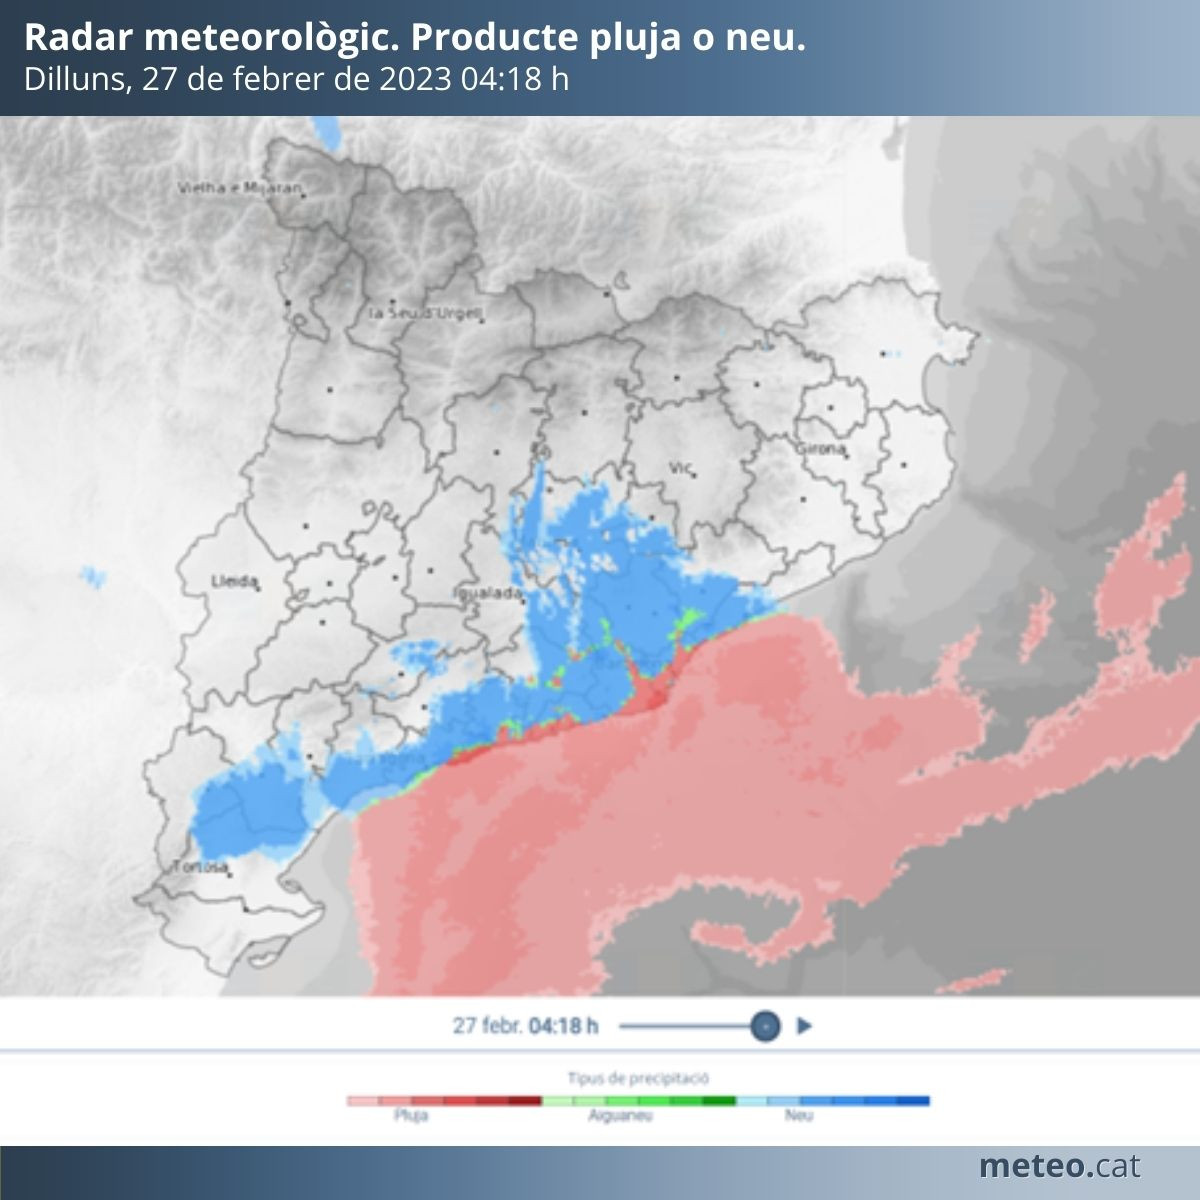 Precipitaciones en forma de nieve o lluvia en el sector central del litoral y prelitoral / METEOCAT